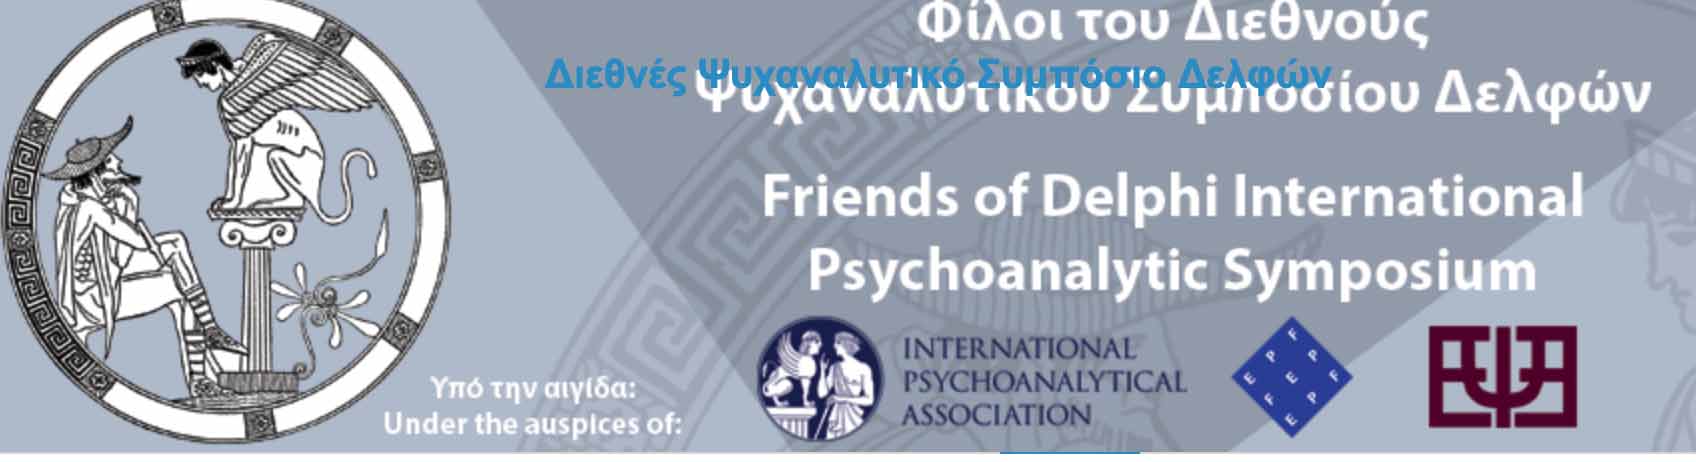 IX Simposio Psicoanalítico Internacional Delphi